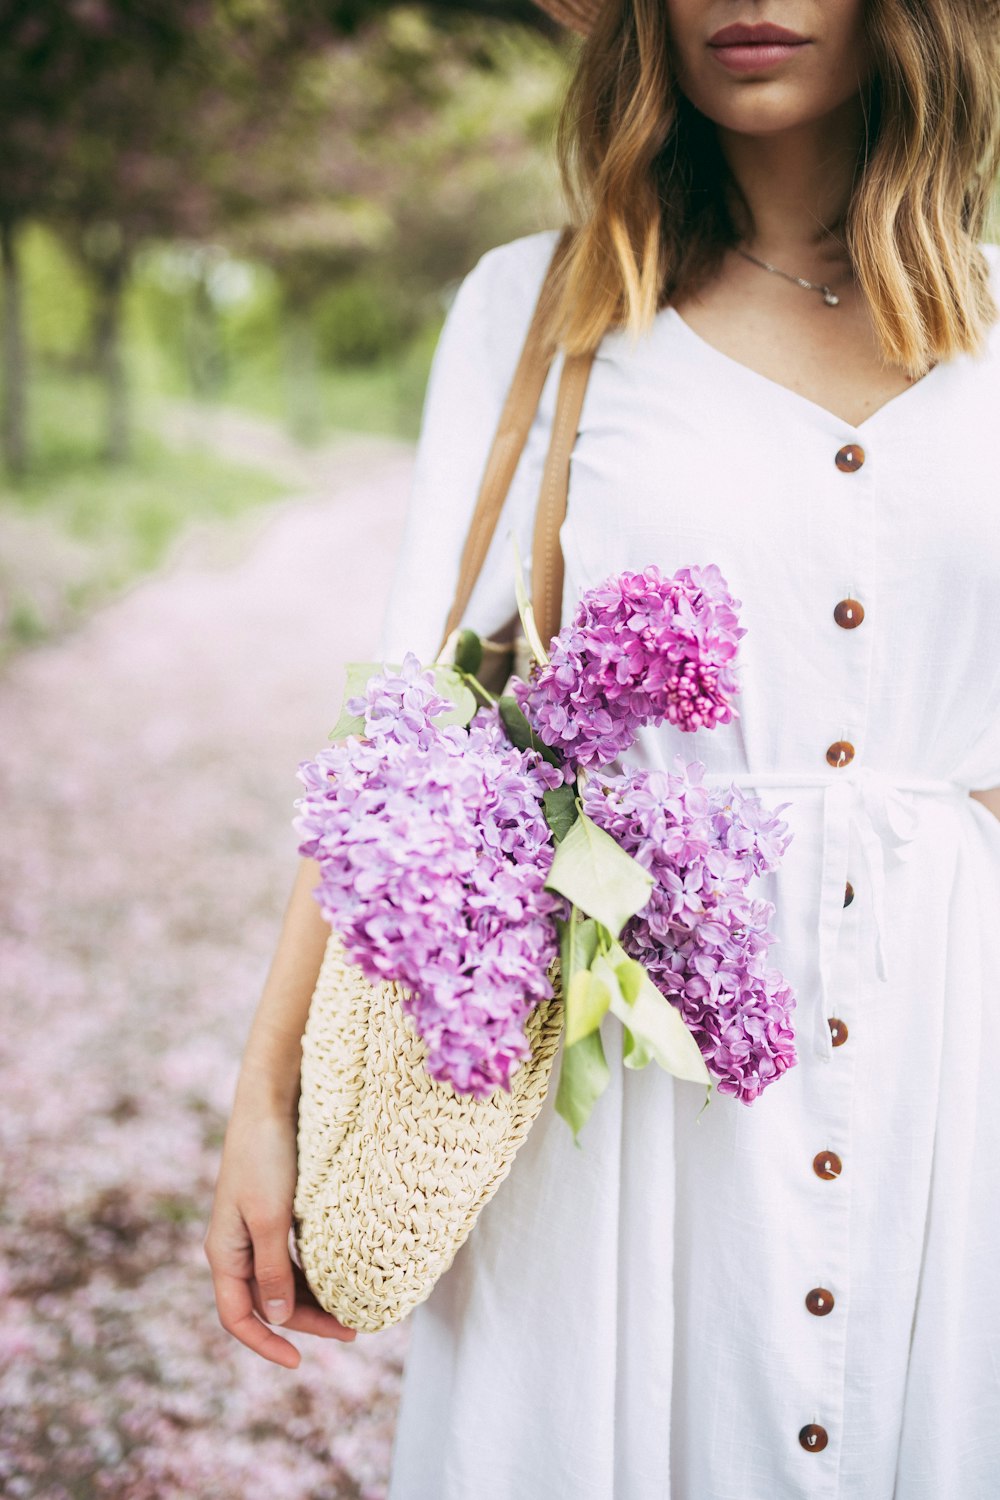 donna che trasporta borsa con fiori